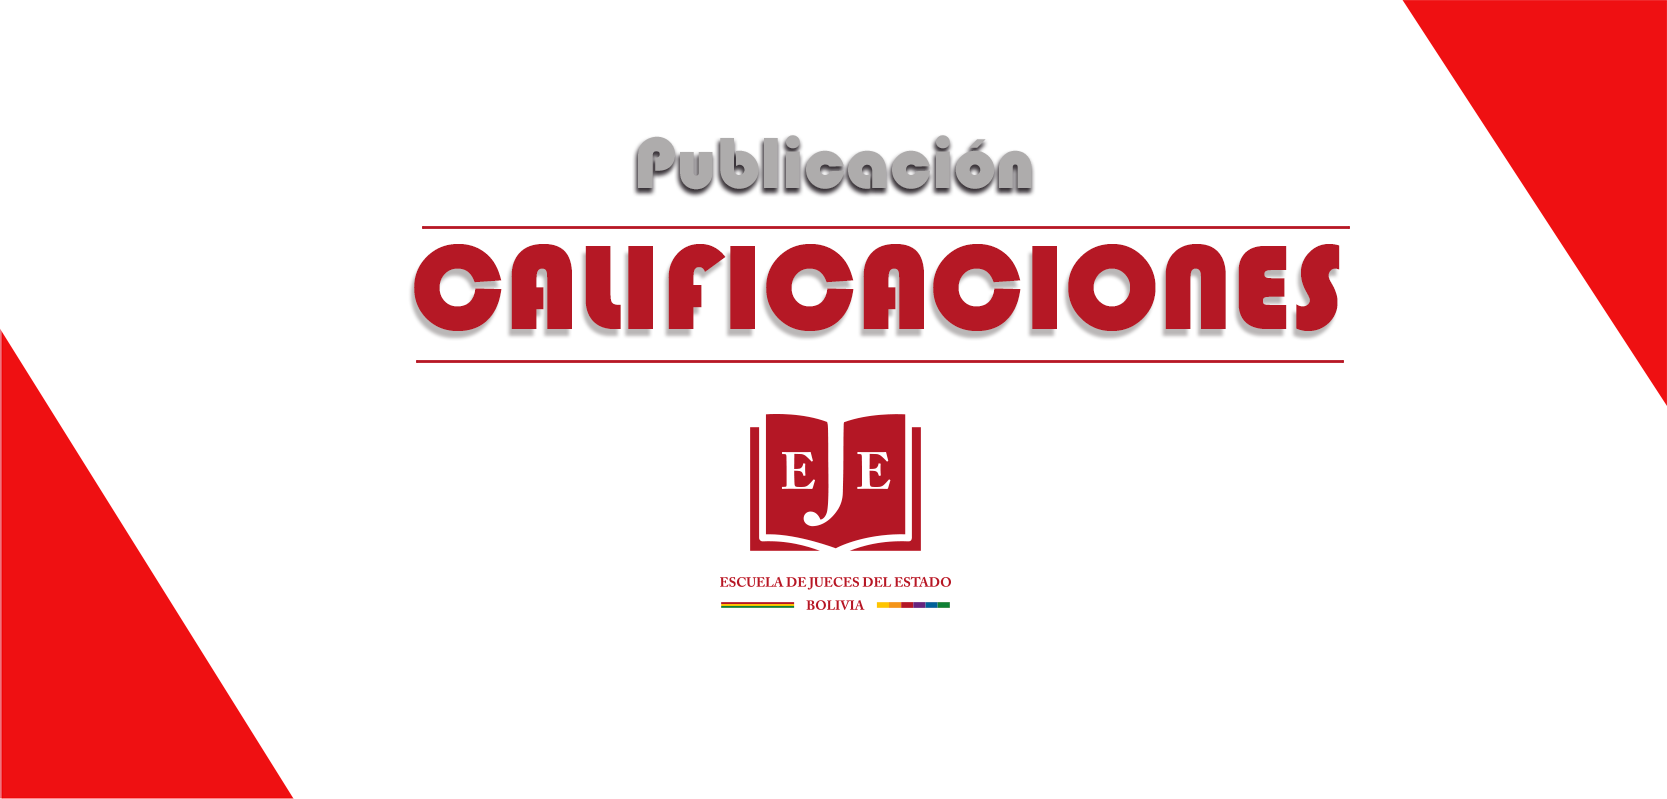 PUBLICACION DE CALIFICACIONES - CURSO CAUSALES DE NULIDAD DE LAS RESOLUCIONES JUDICIALES RECURRIDAS EN CASACION EN MATERIA AGRARIA